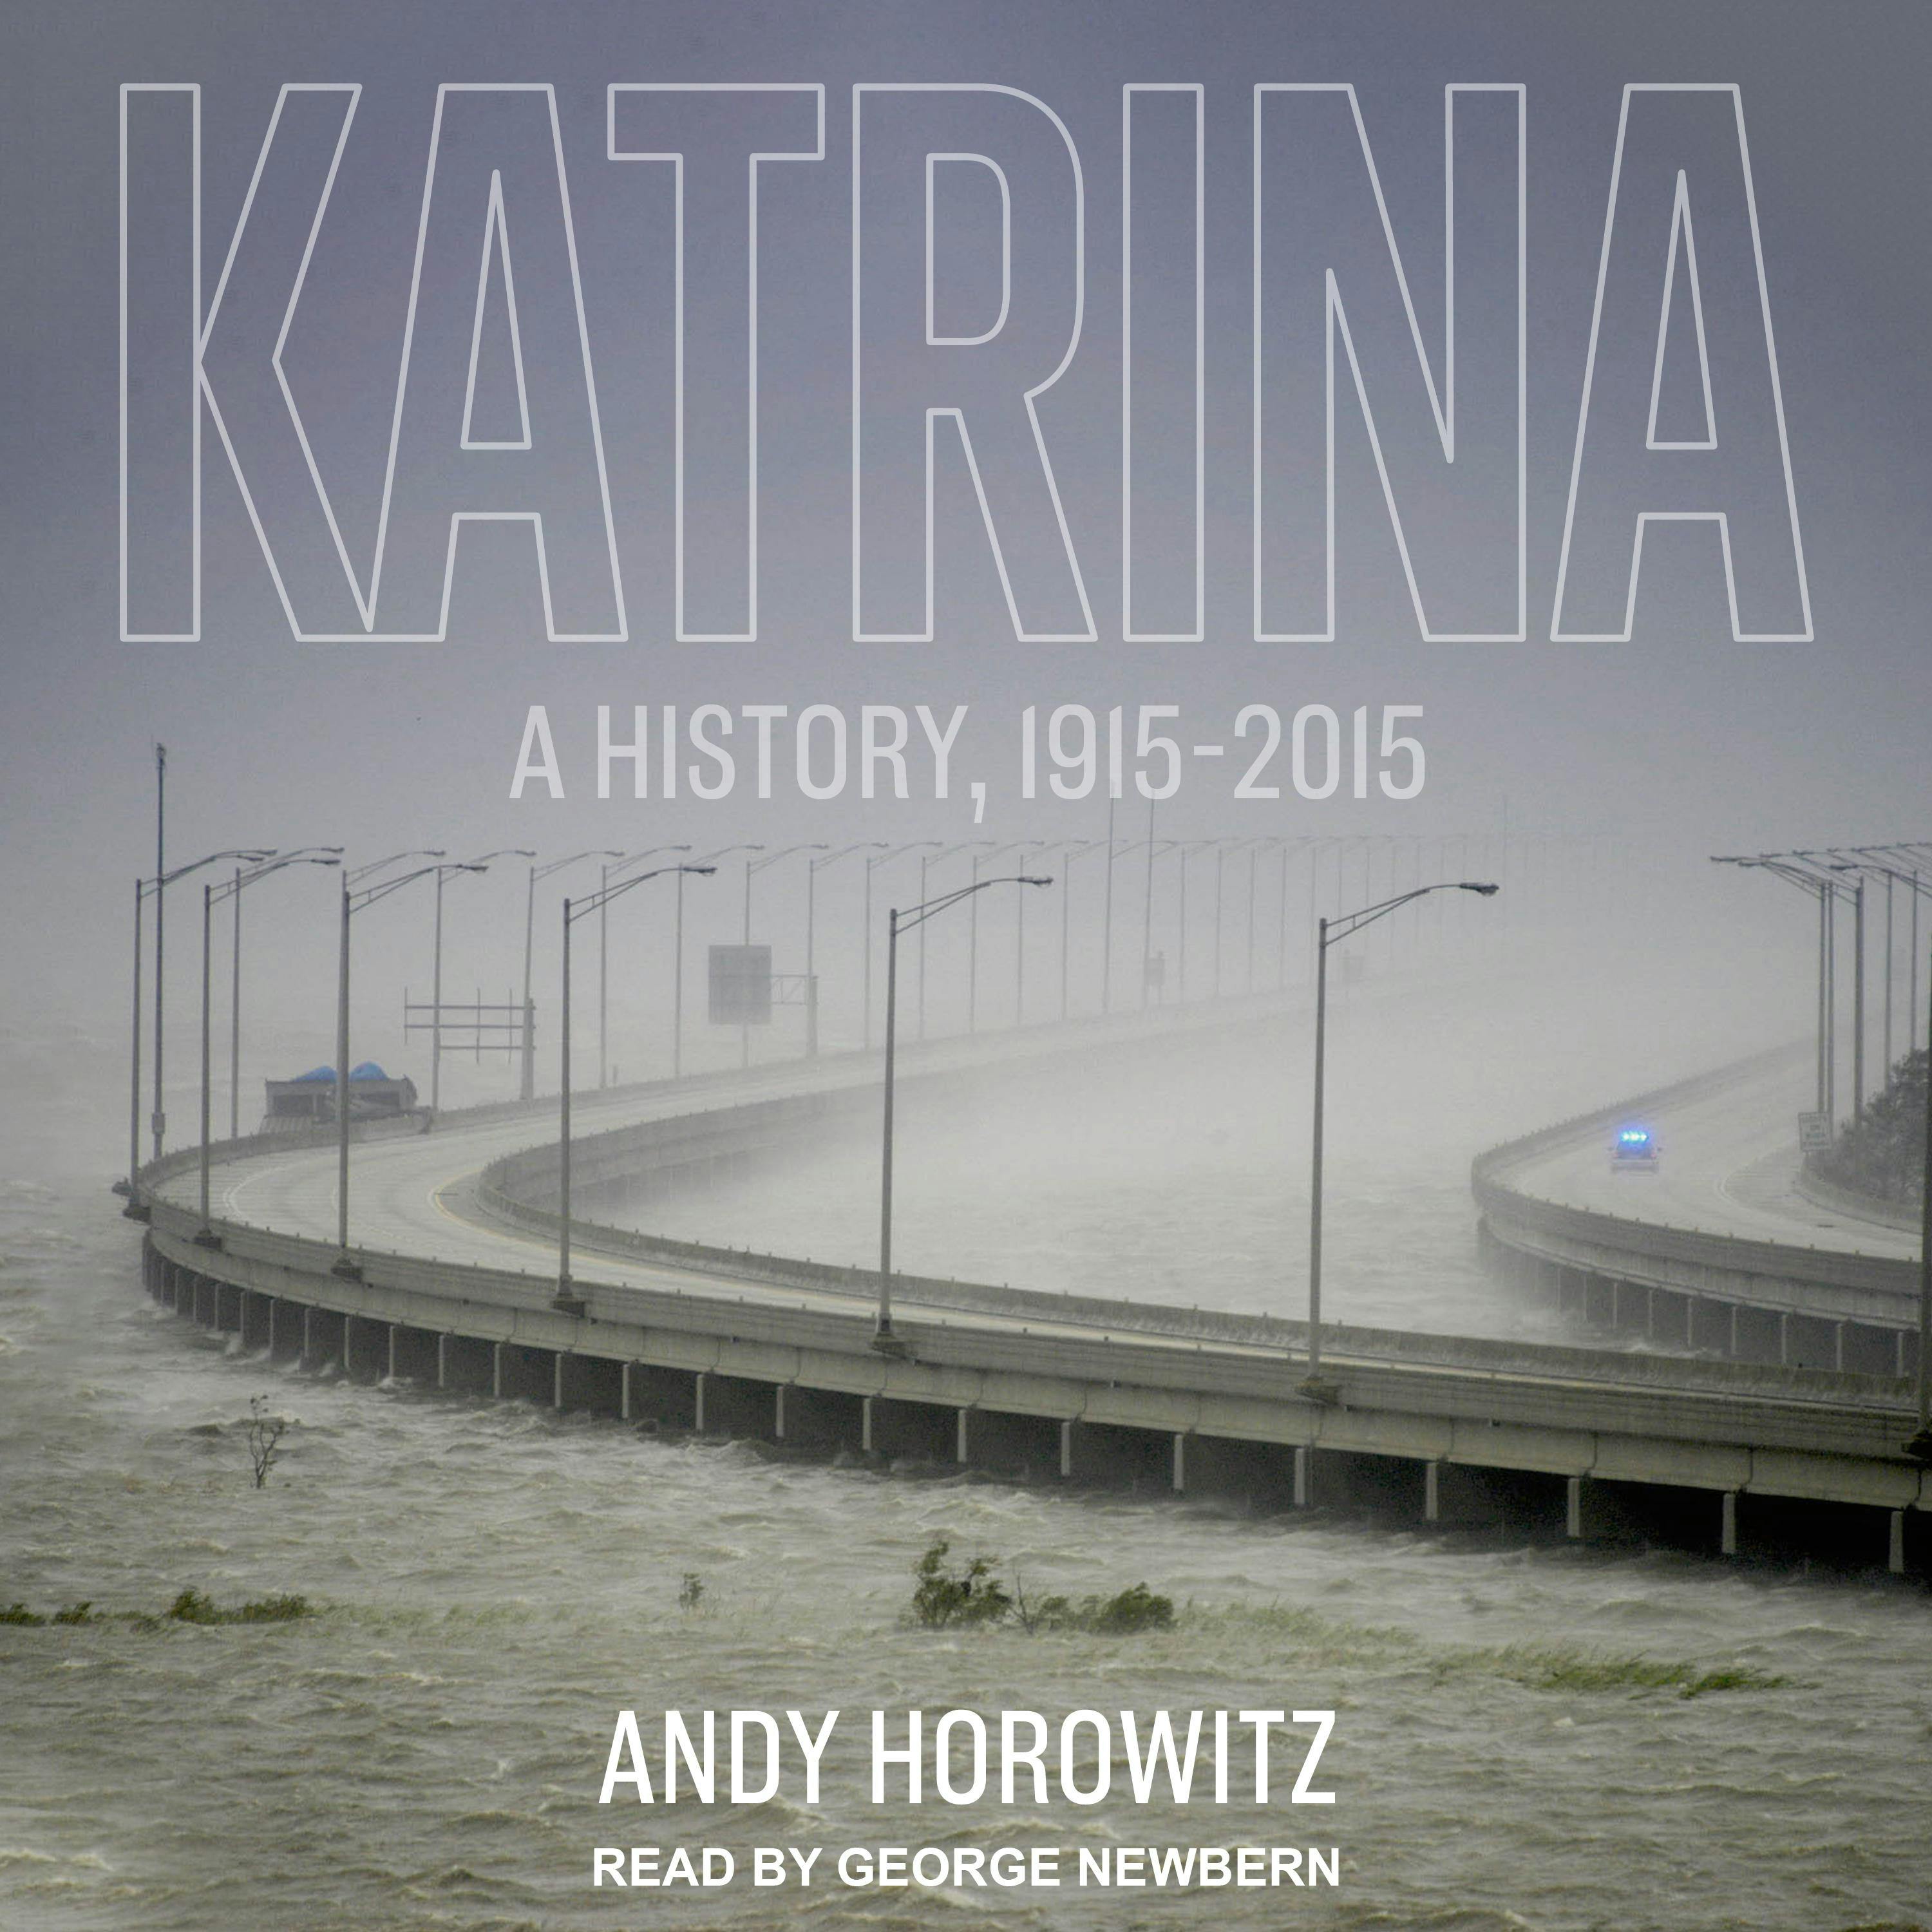 Katrina: A History, 1915-2015 - Andy Horowitz